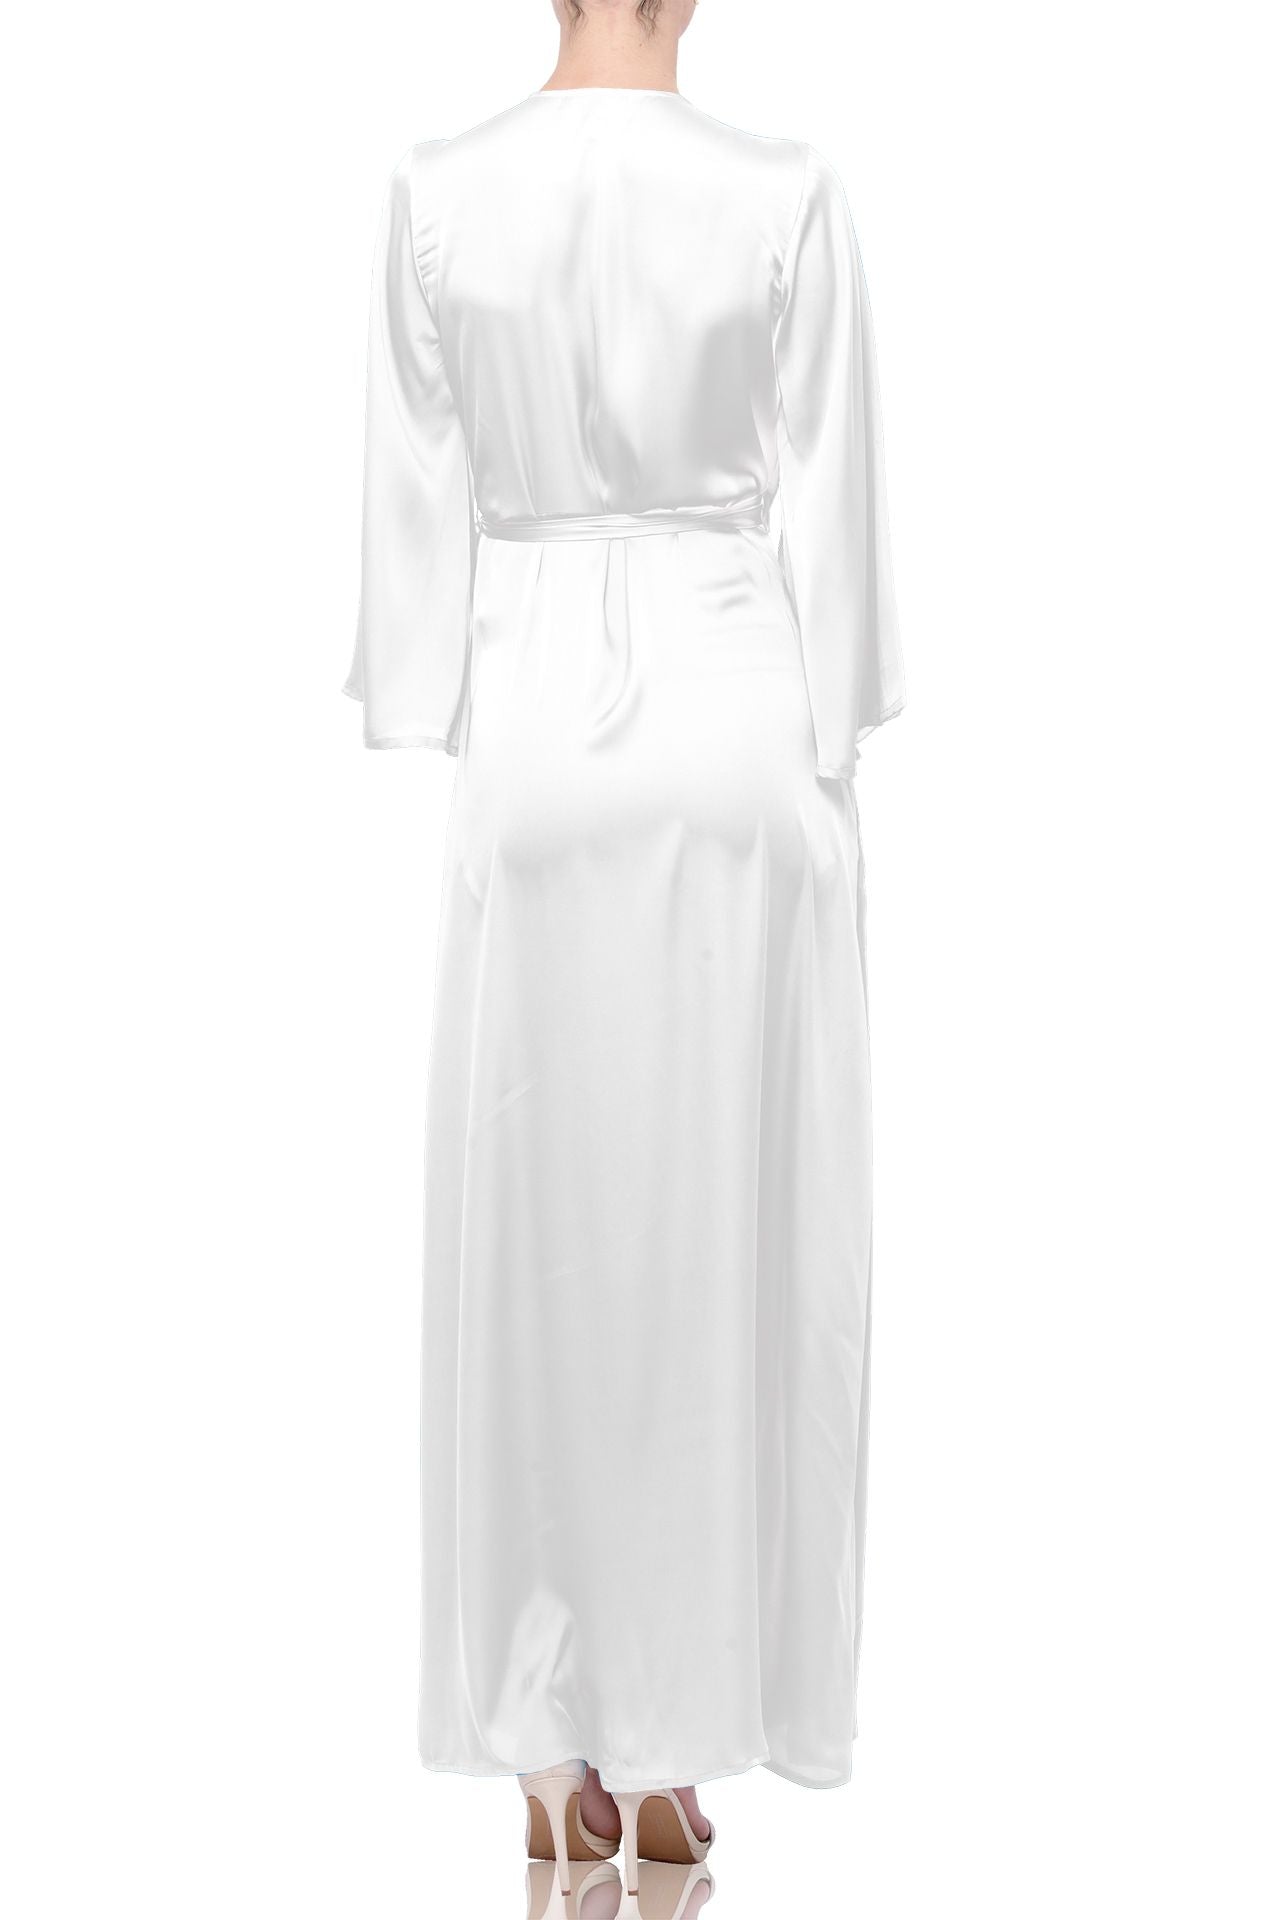 White Long Maxi Wrap Dress